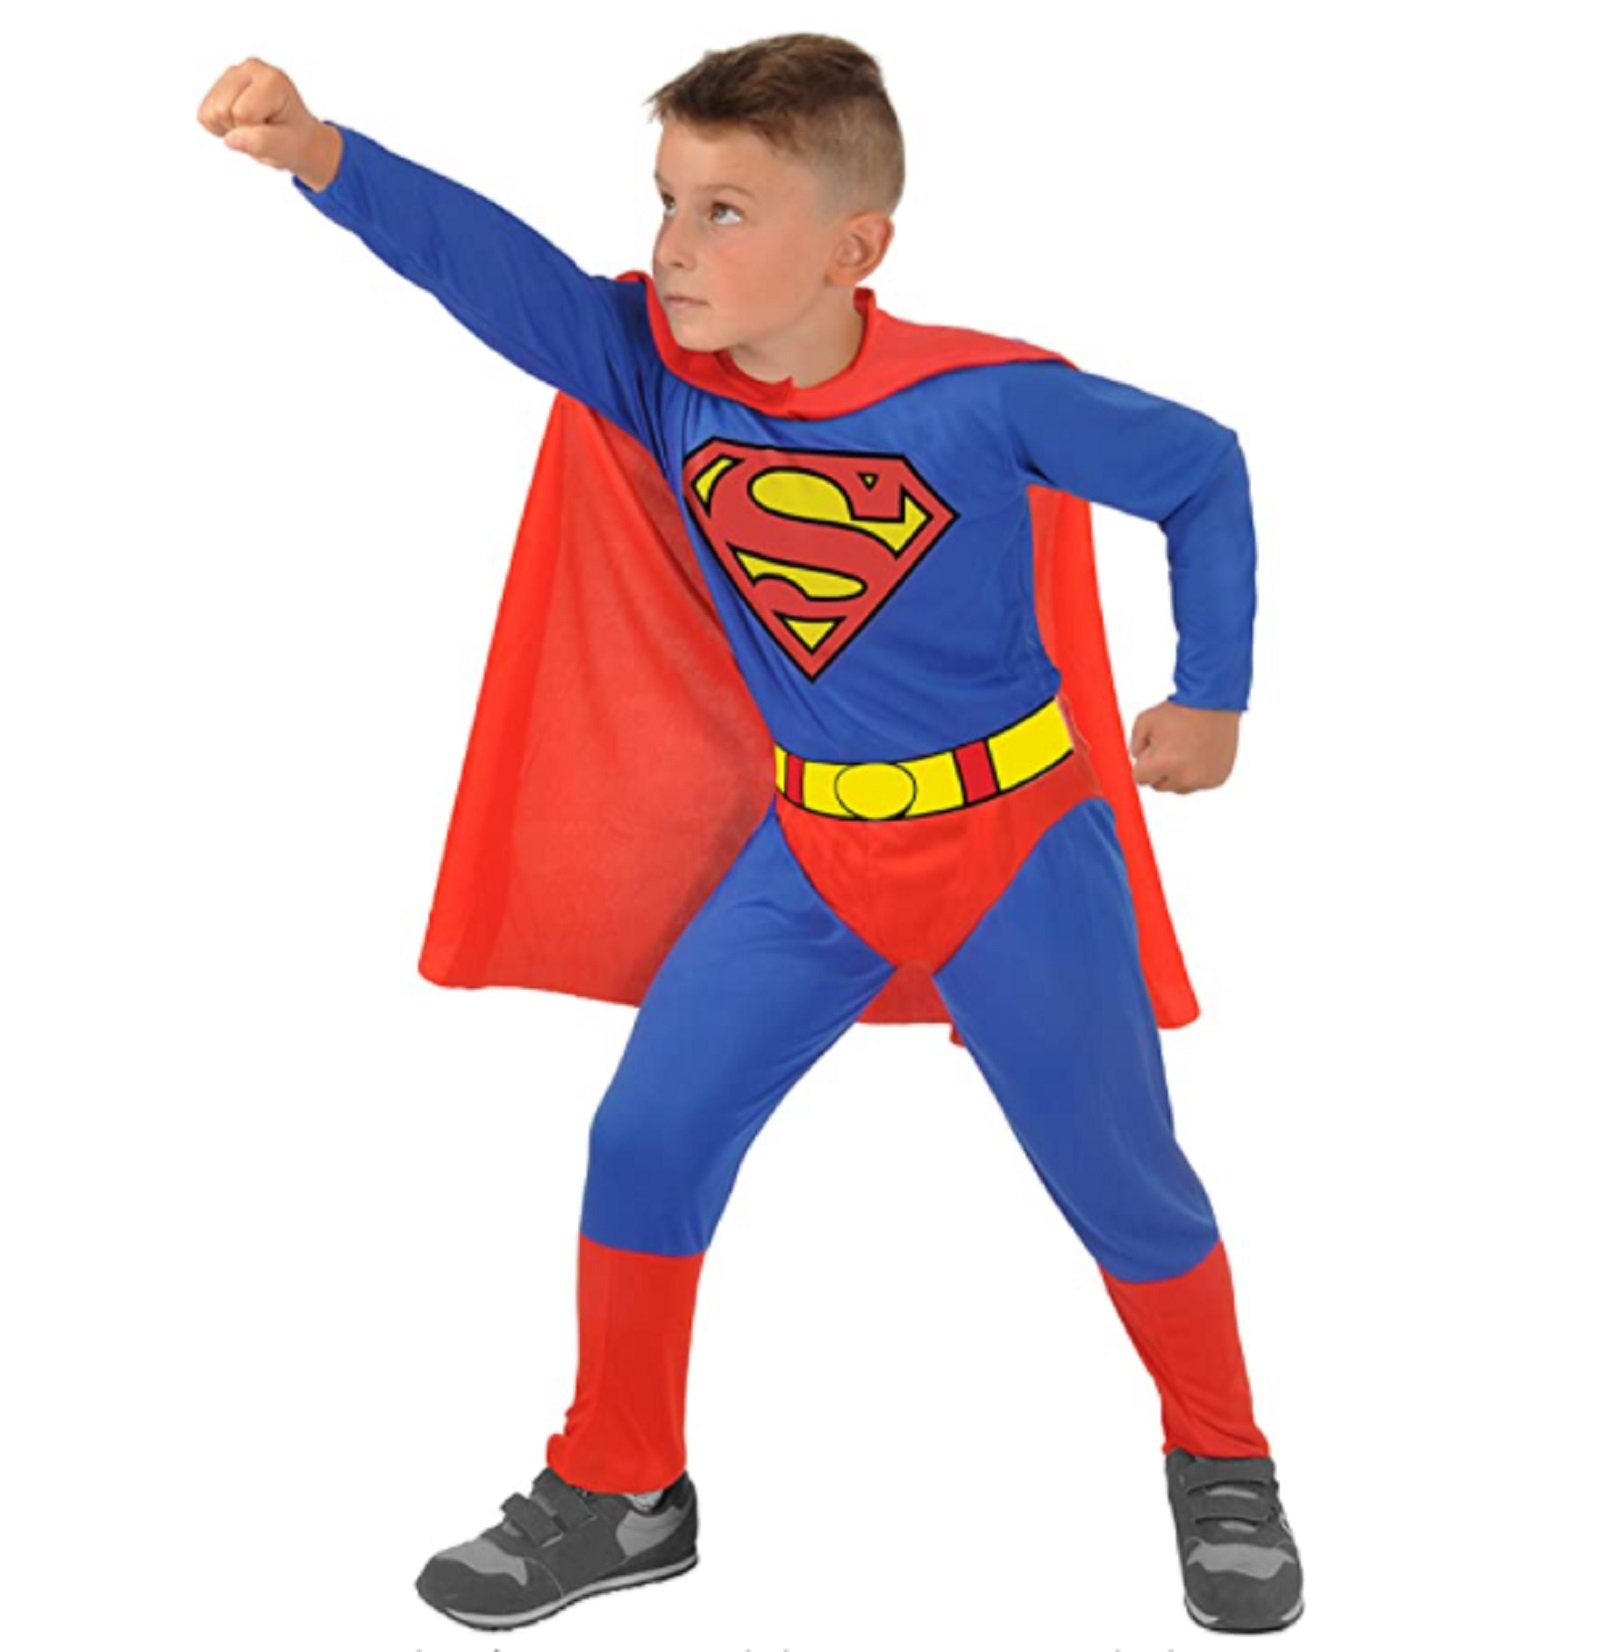 El manual (polémico) sobre cómo disfrazar a los niños: ni espadas ni superhéroes